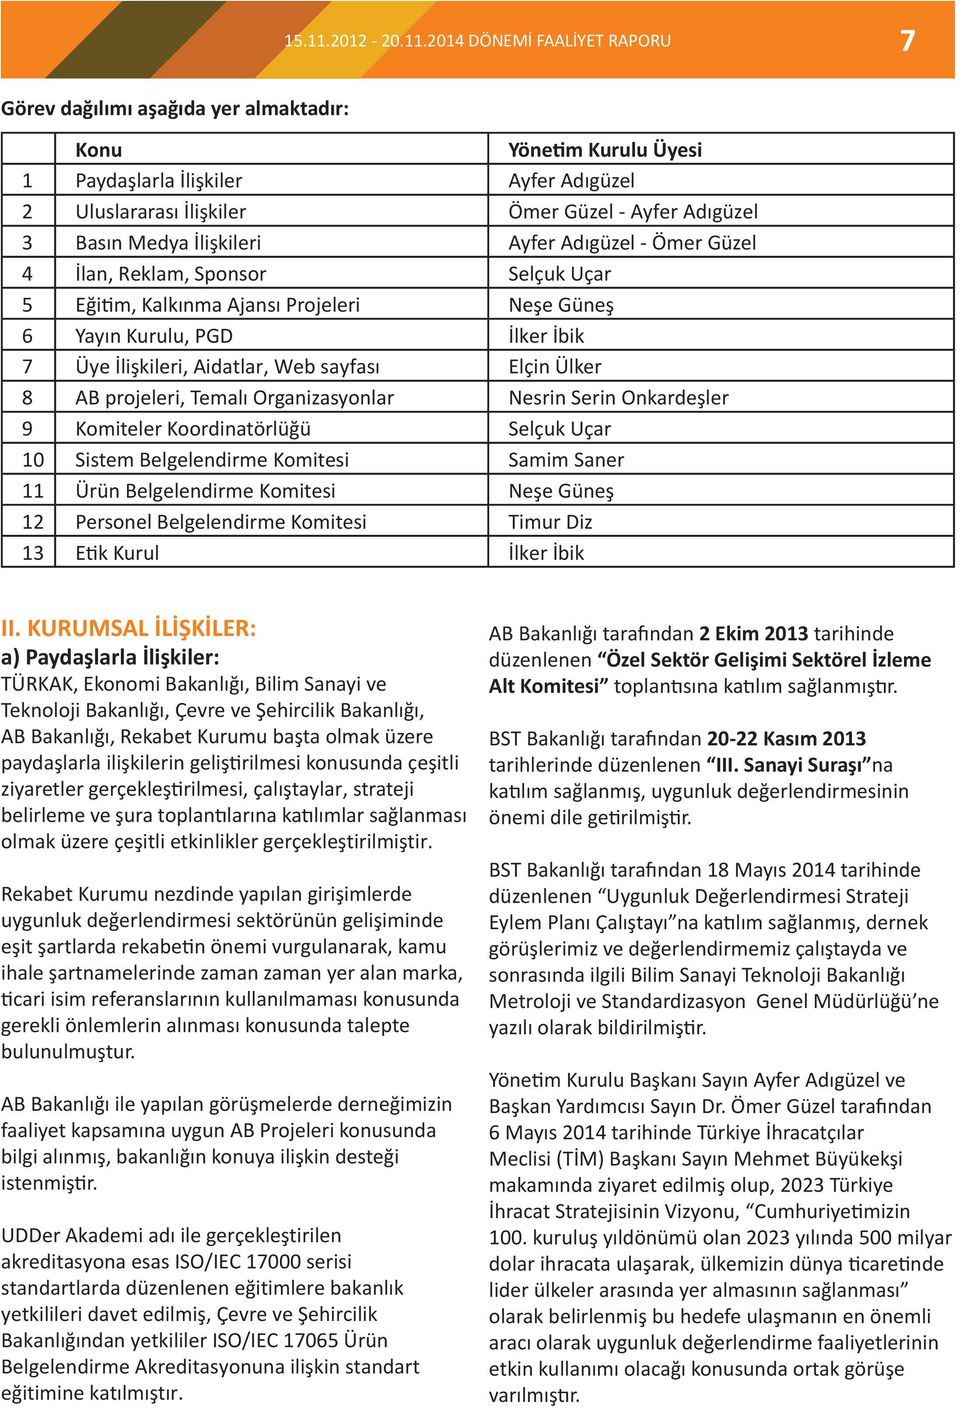 2014 DÖNEMİ FAALİYET RAPORU 7 Görev dağılımı aşağıda yer almaktadır: Konu Yönetim Kurulu Üyesi 1 Paydaşlarla İlişkiler Ayfer Adıgüzel 2 Uluslararası İlişkiler Ömer Güzel - Ayfer Adıgüzel 3 Basın